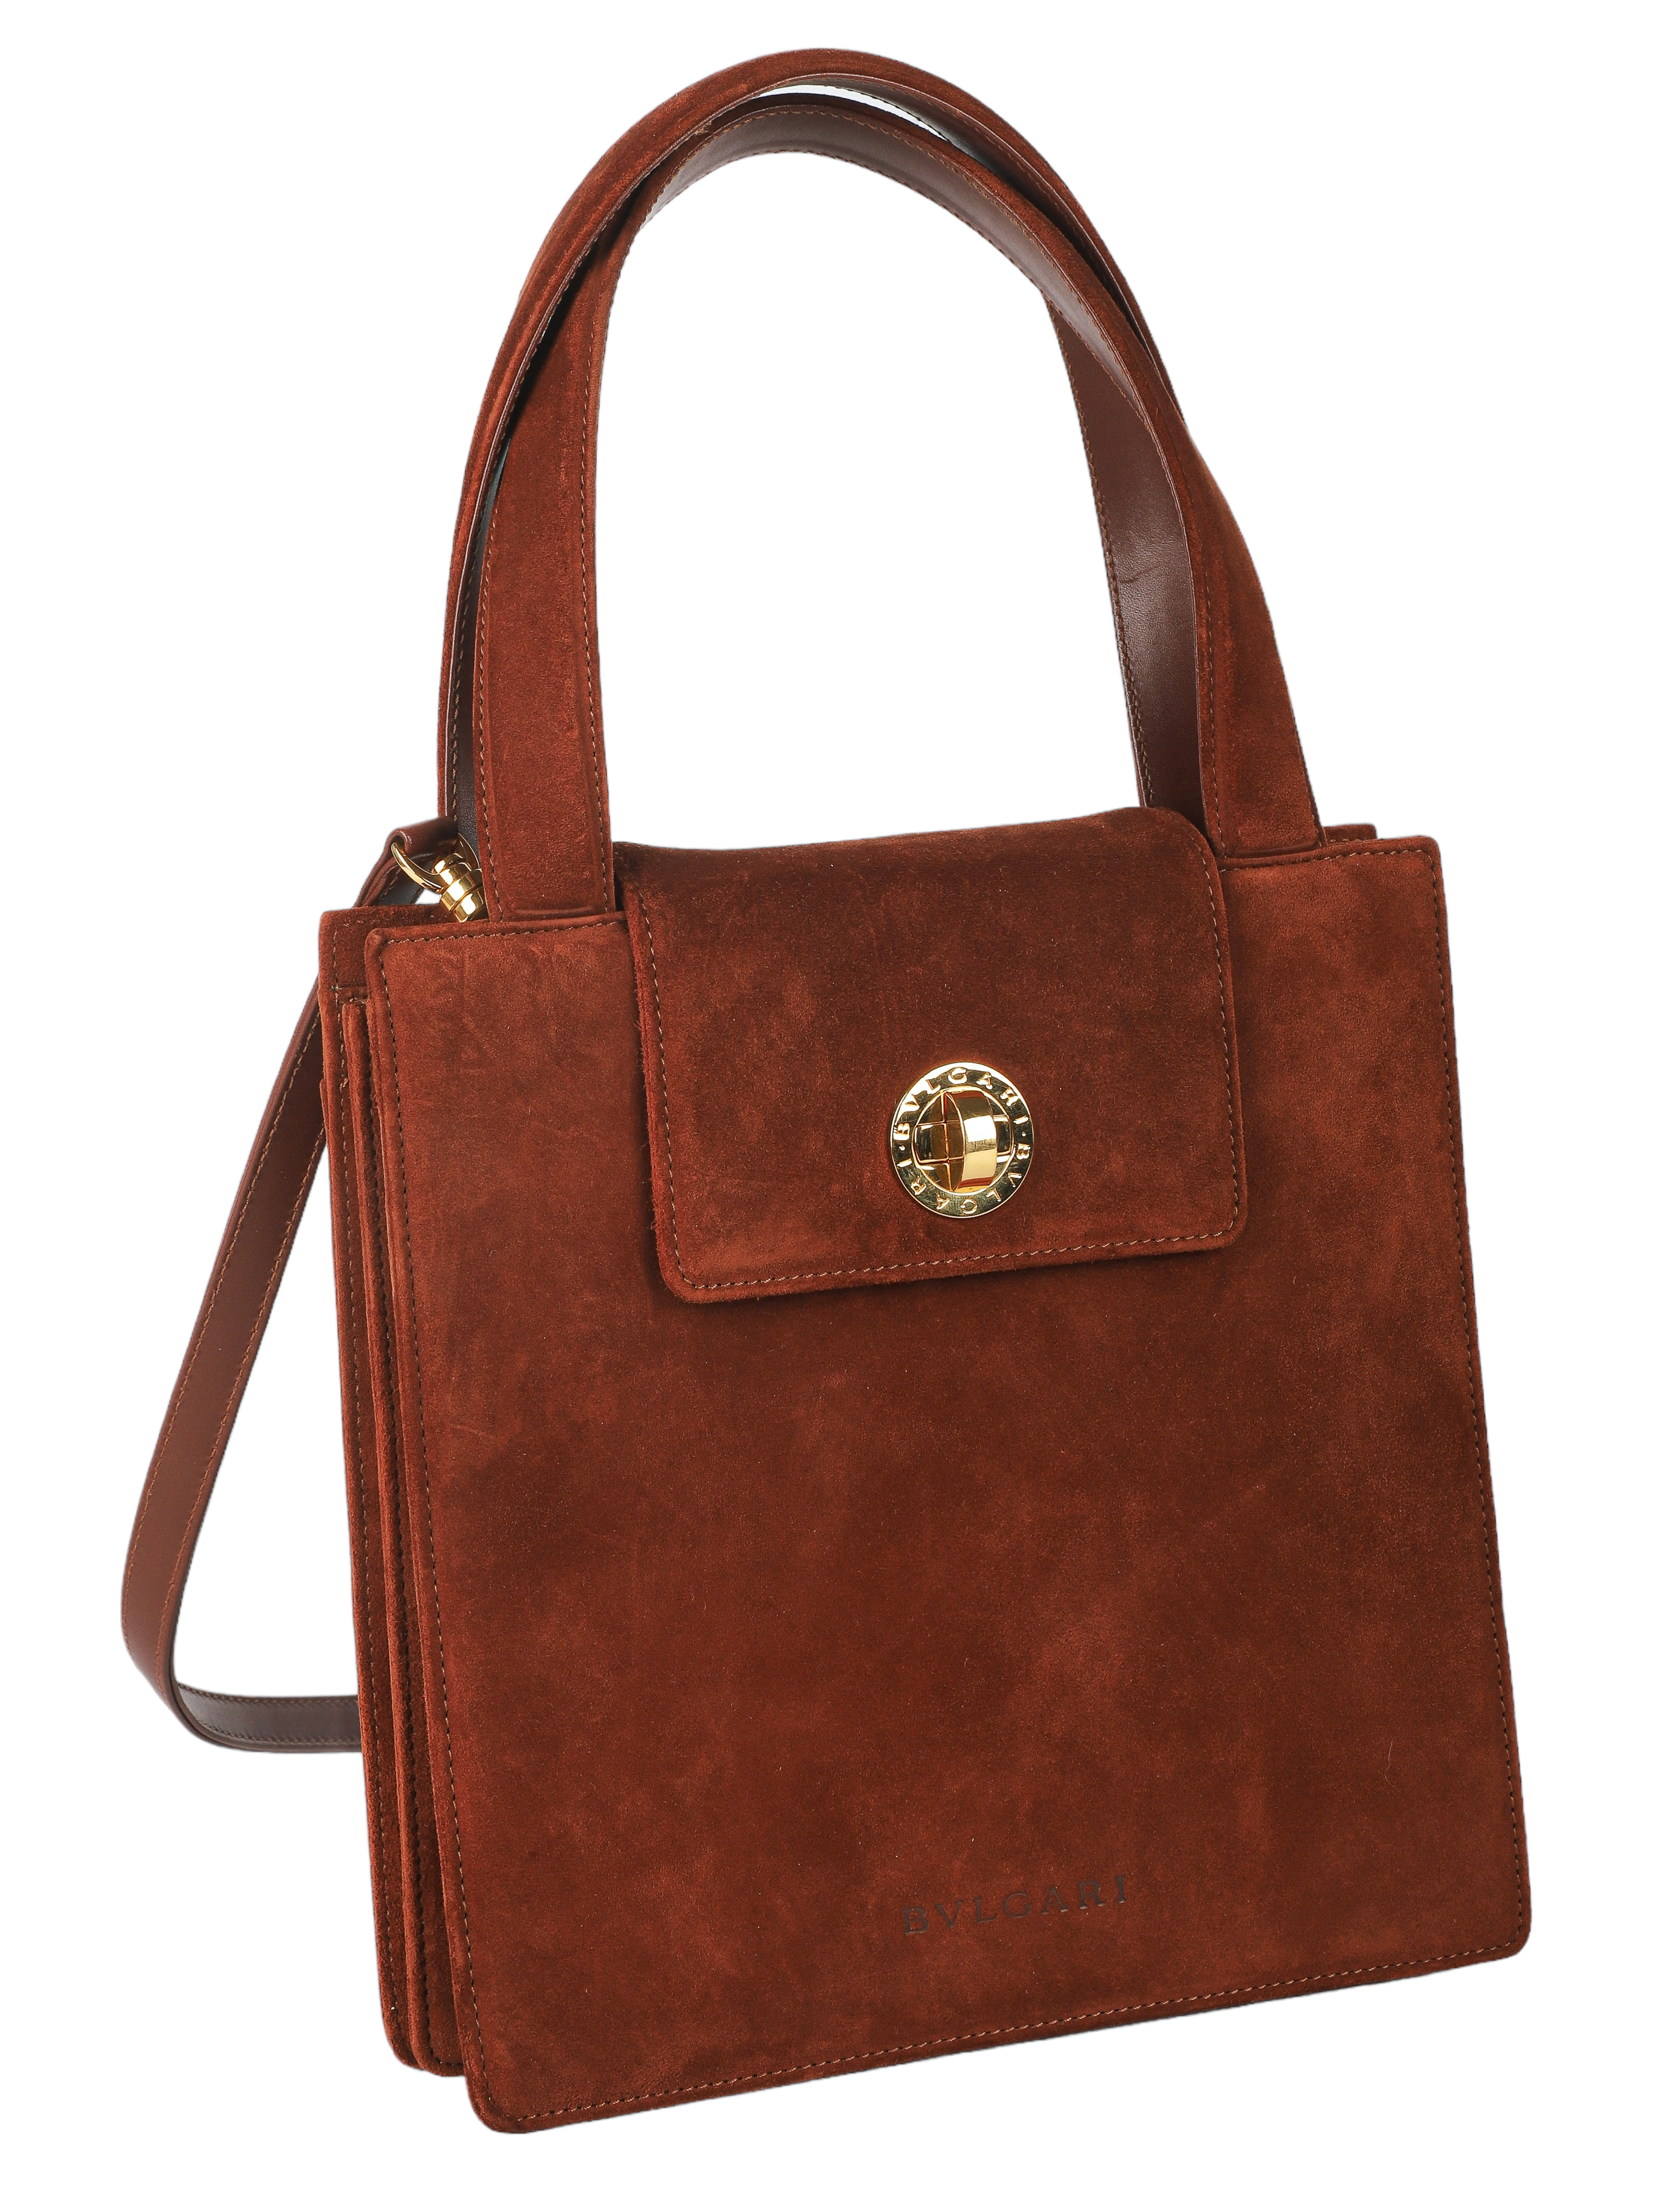 Bvlgari Rust Colored Suede Handbag,